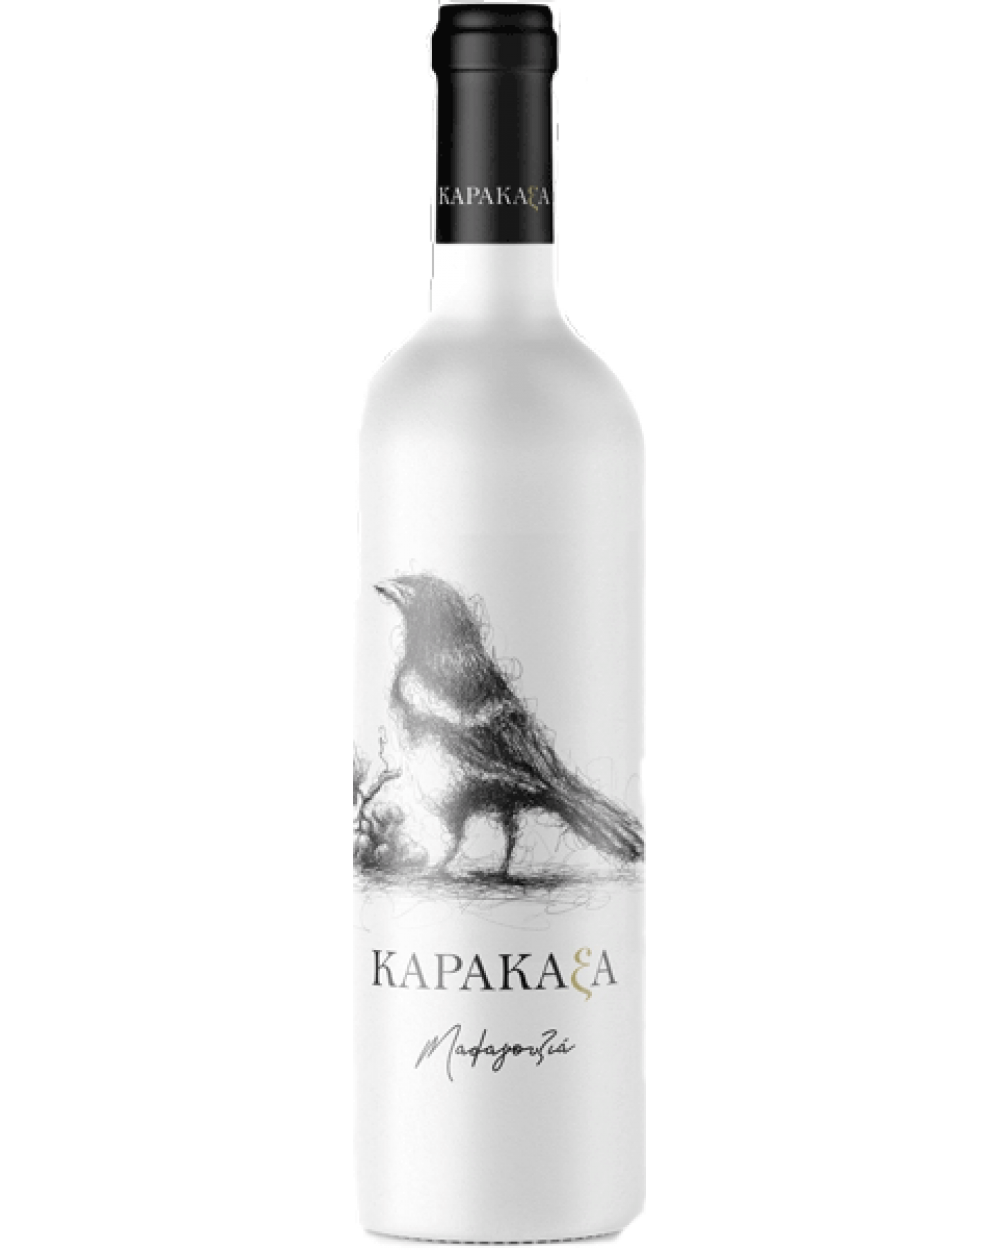 Cava Kordas Karakaxa Malagousia White dry wine 750ml